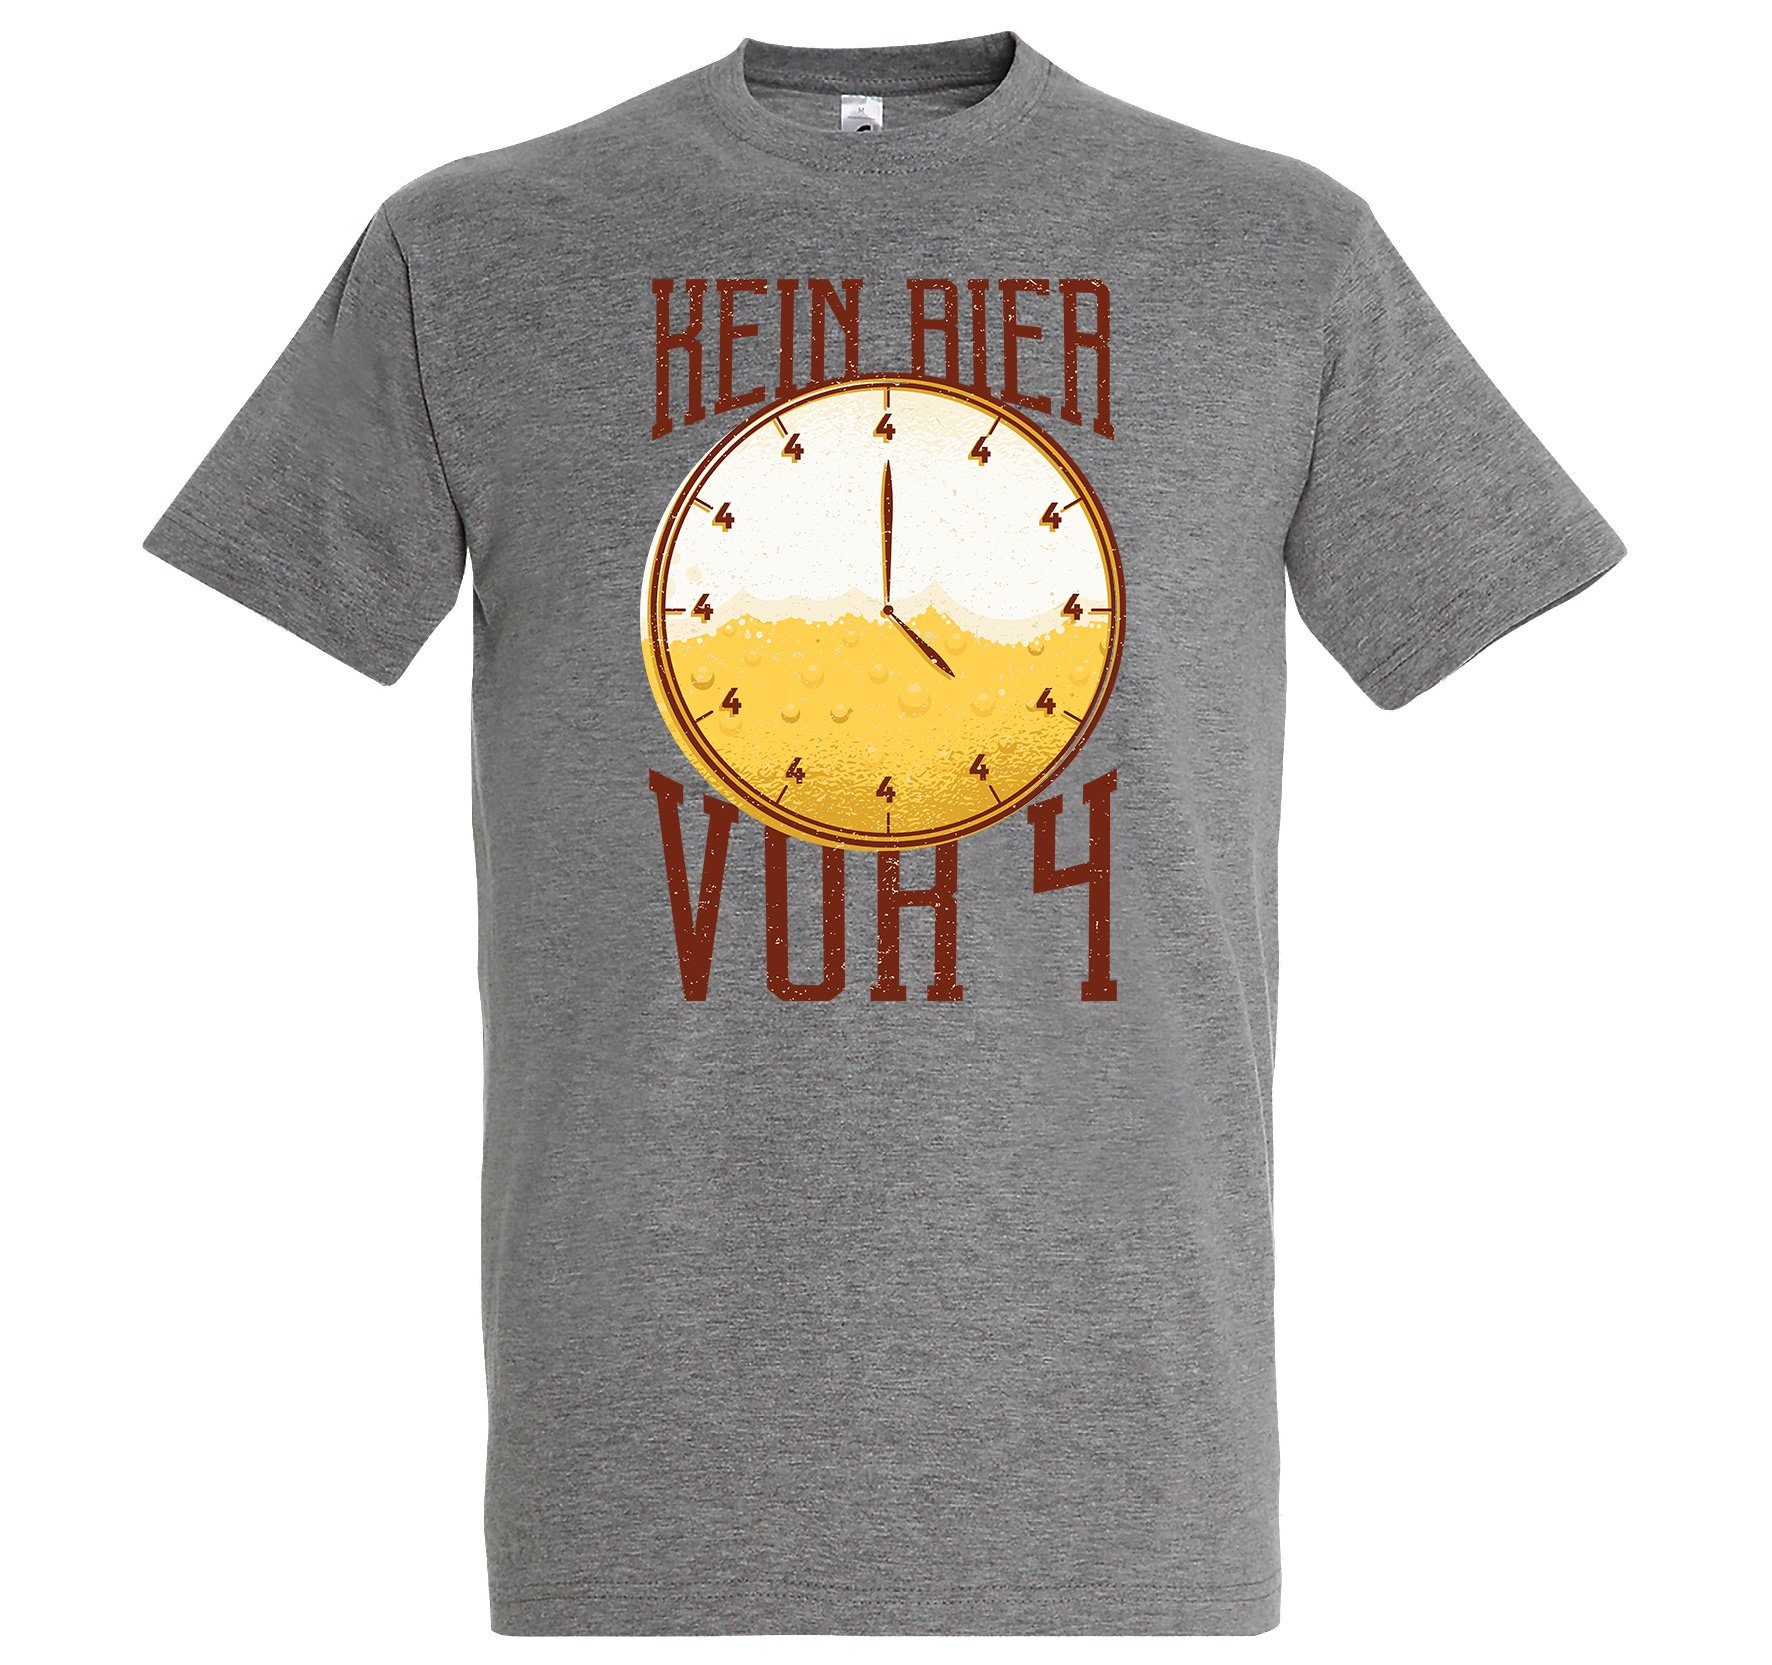 T-Shirt mit Herren BierVor4 Spruch Grau Youth Designz lustigem Shirt